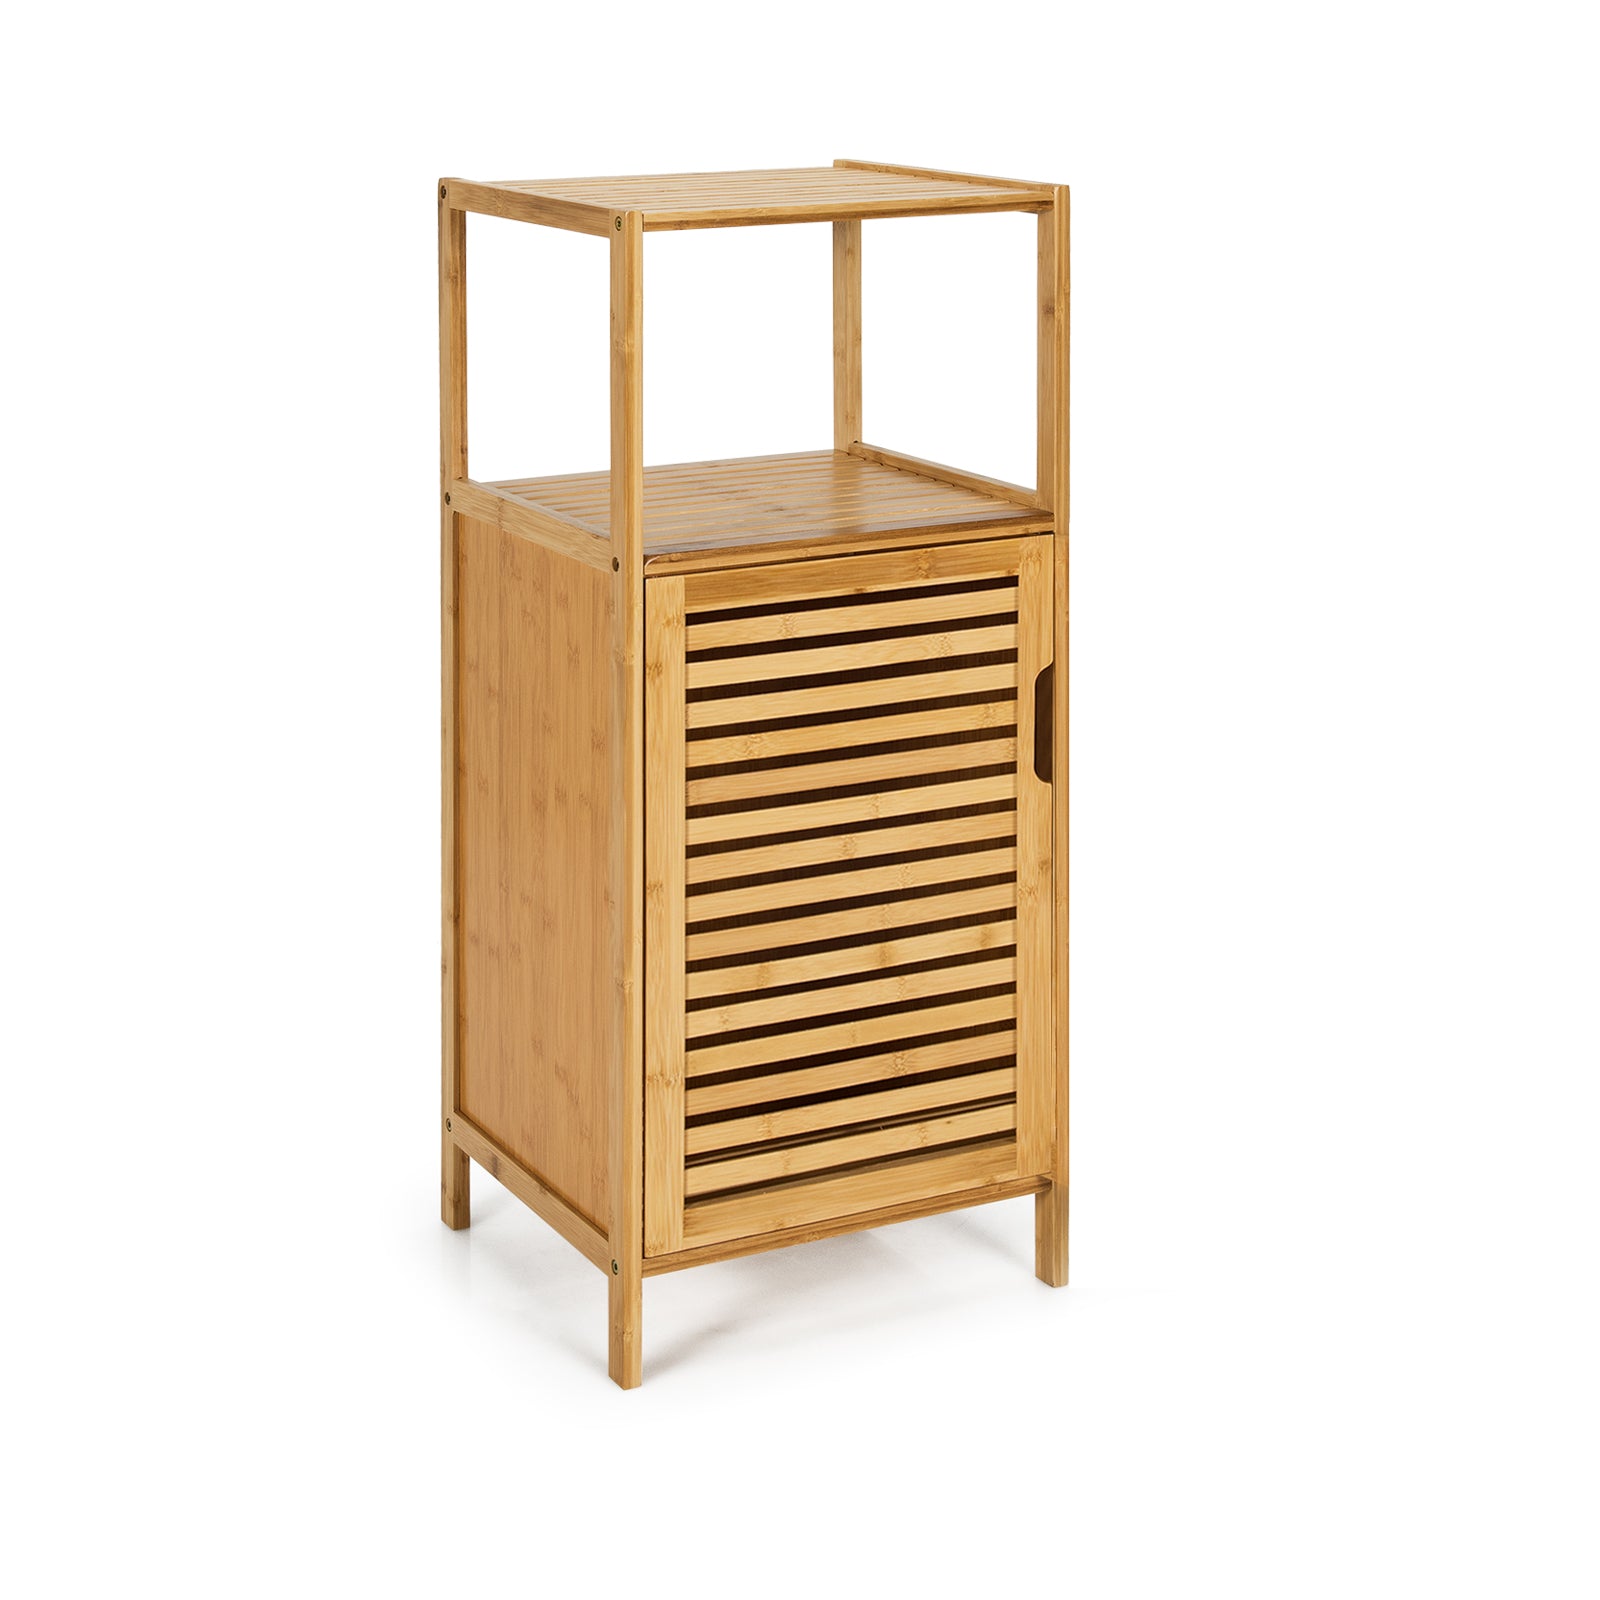 Bamboo Bathroom Storage Floor Cabinet with Door and Shelf Corner Cabinet - Gallery Canada